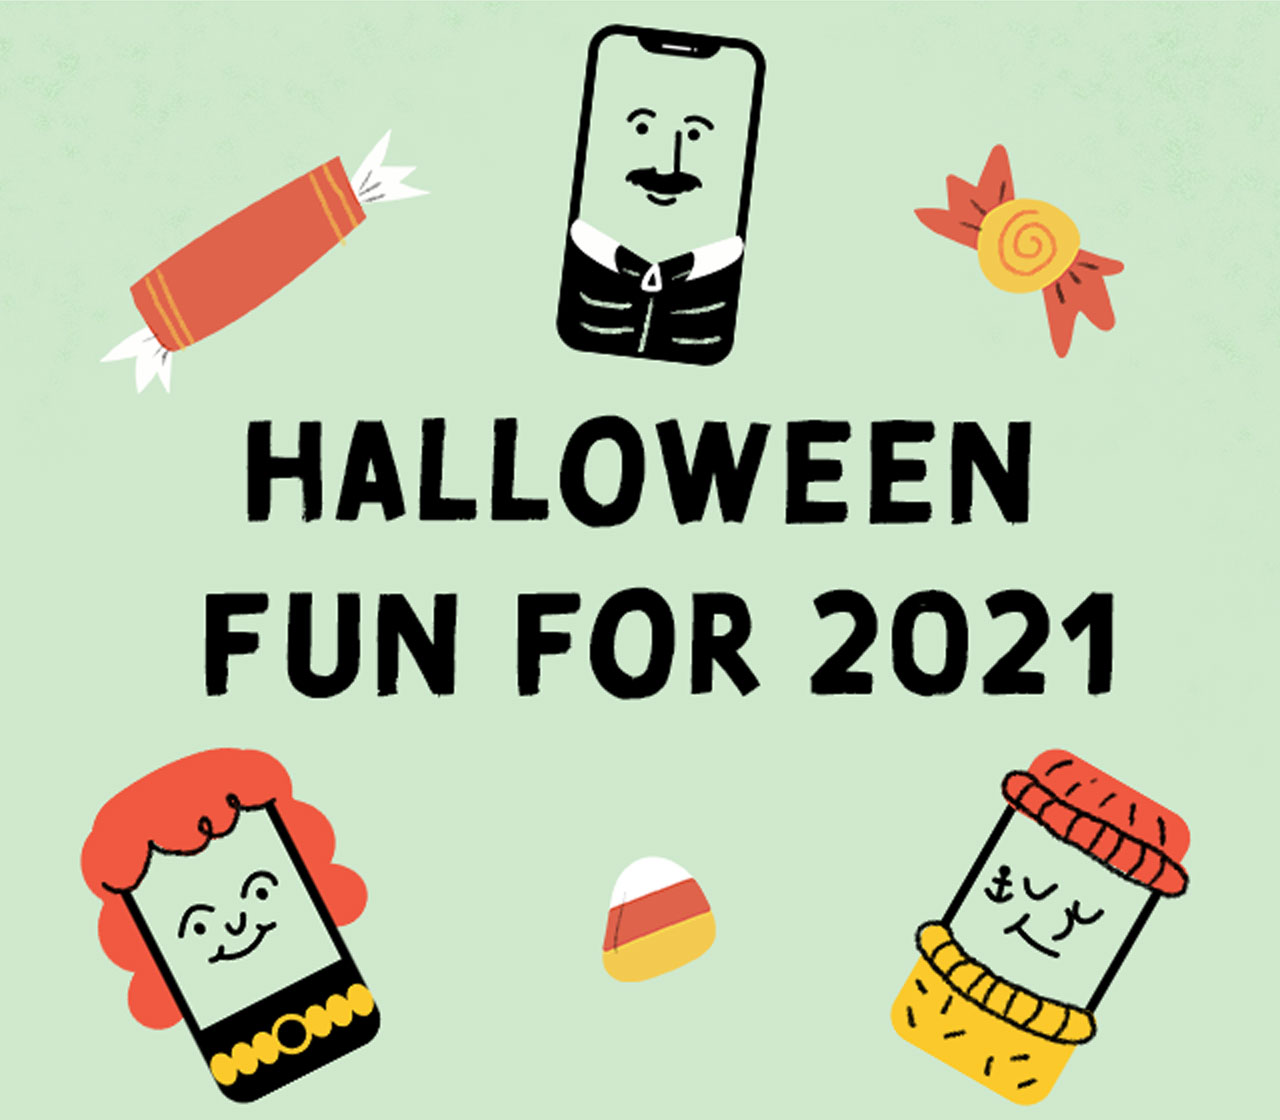 Halloween fun for 2021